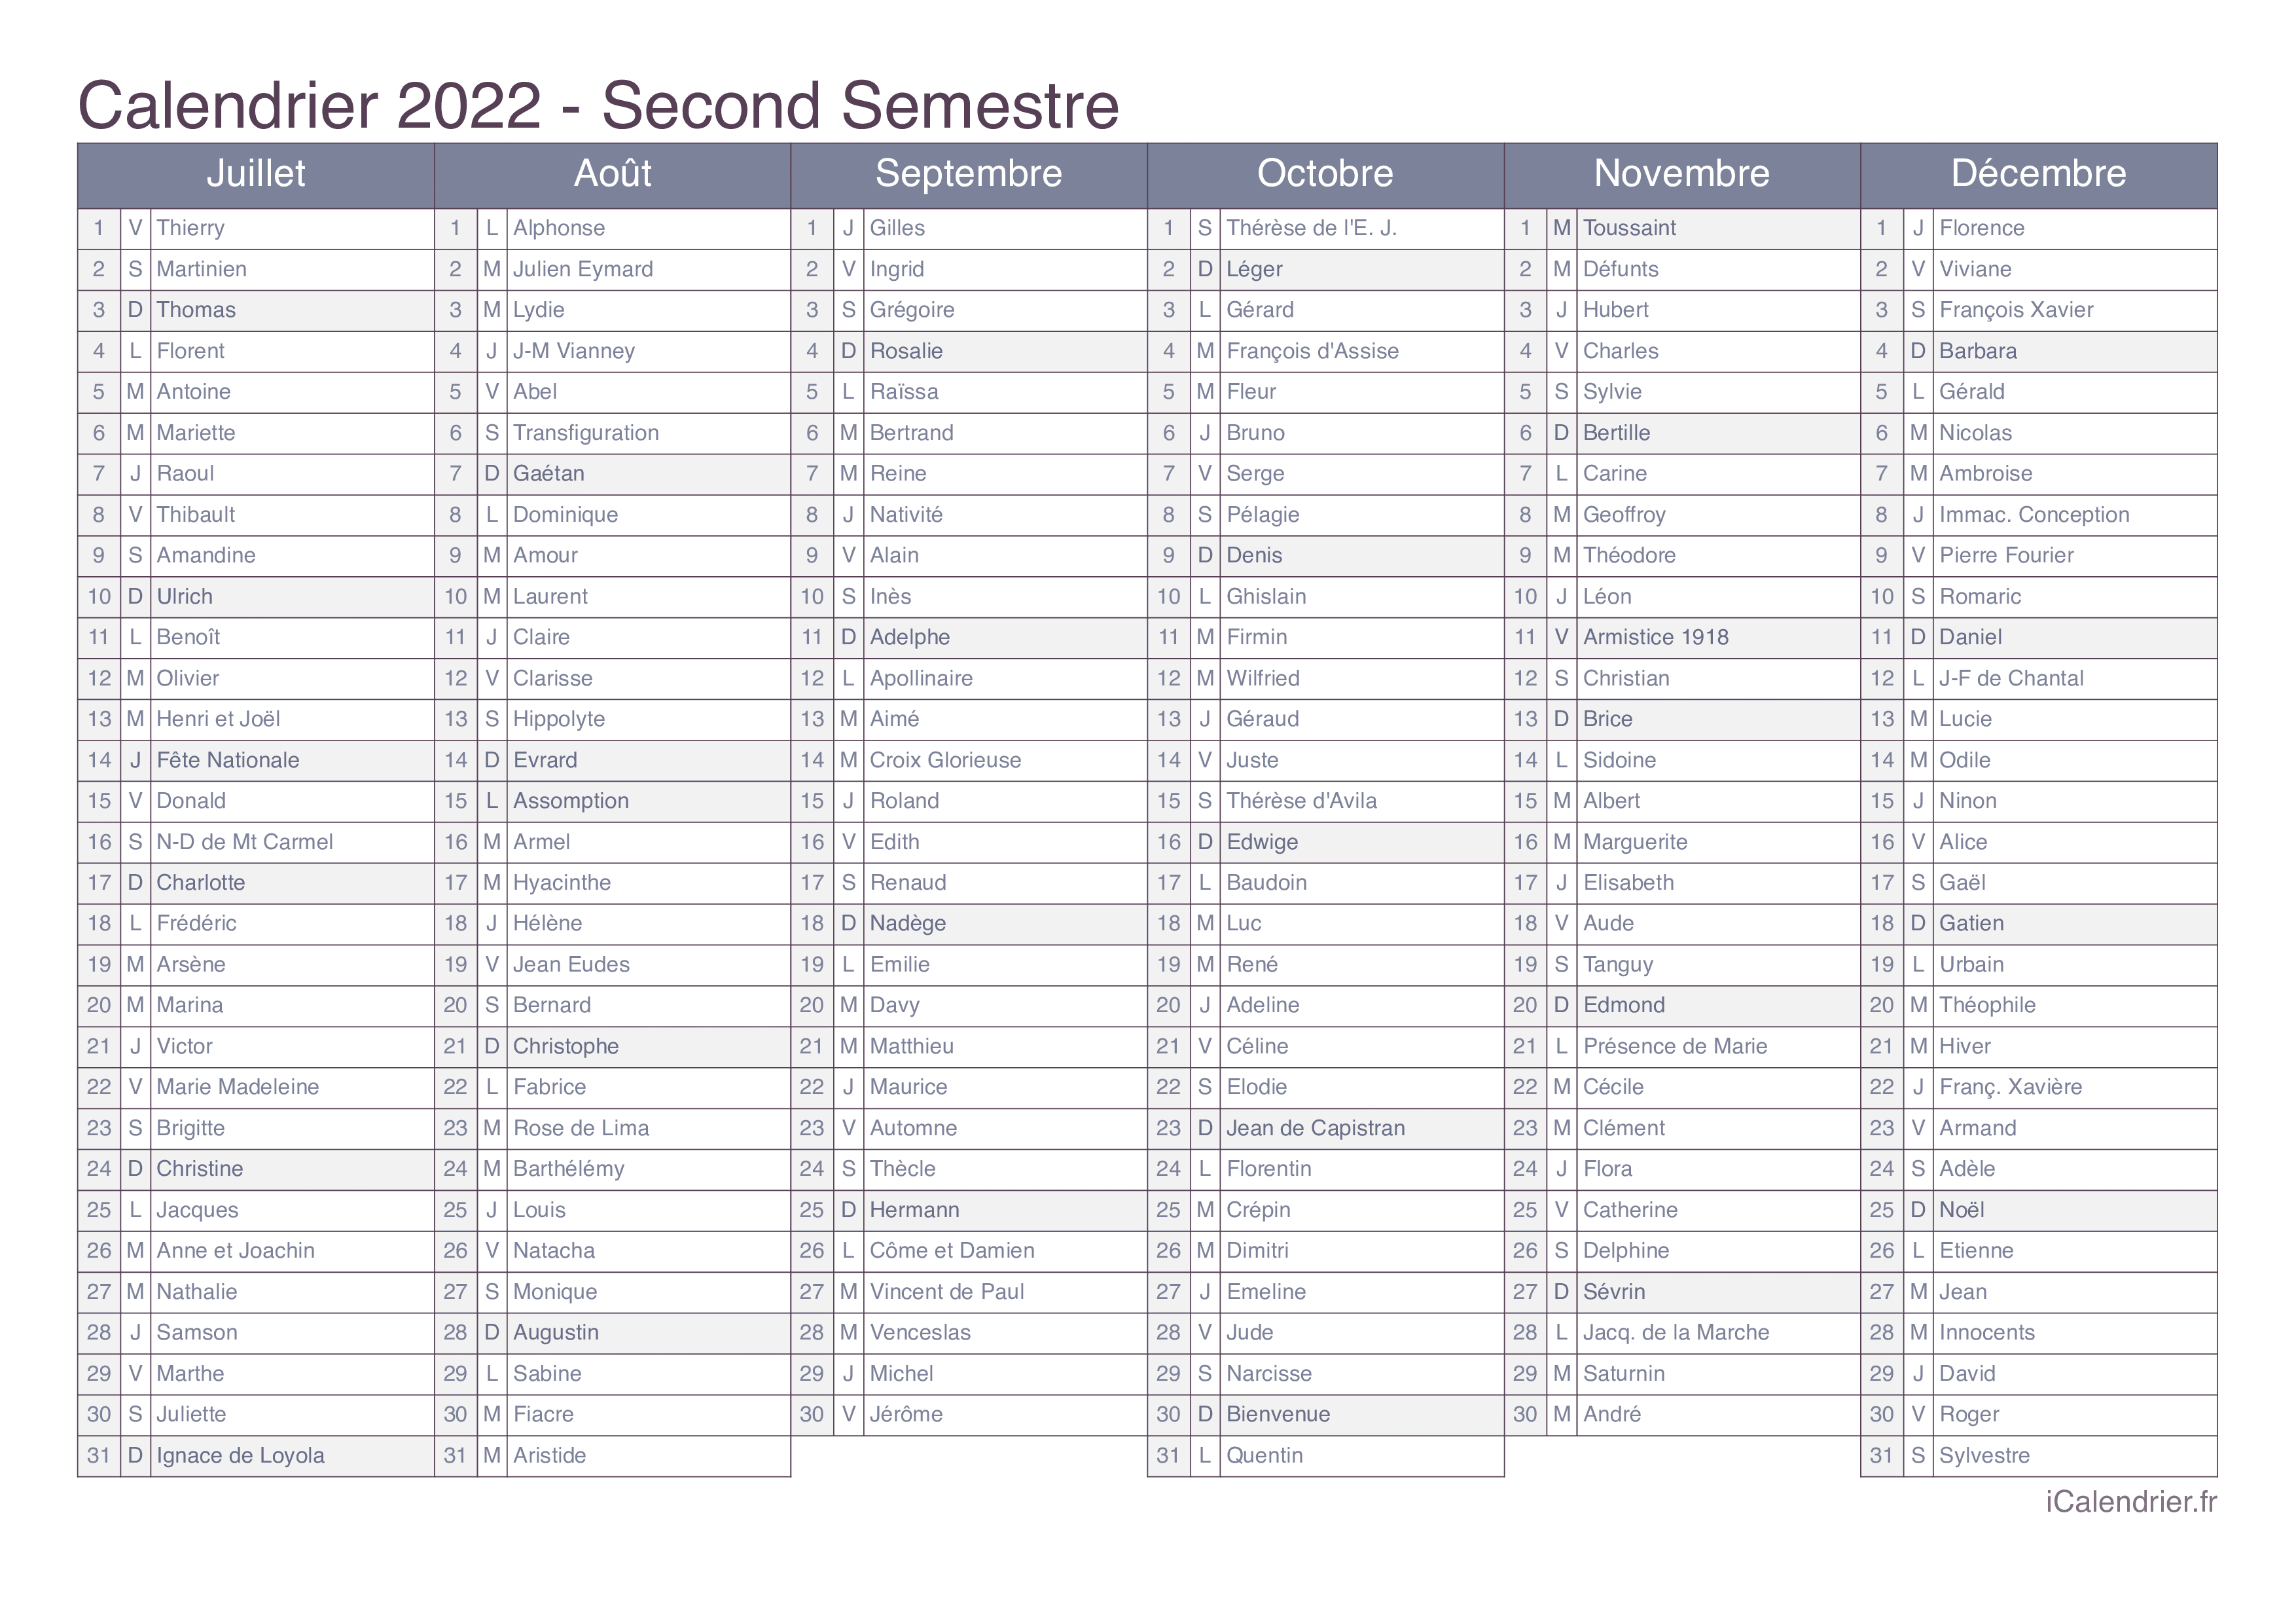 Calendrier 2022 Fêtes Calendrier 2022 à imprimer PDF et Excel   iCalendrier